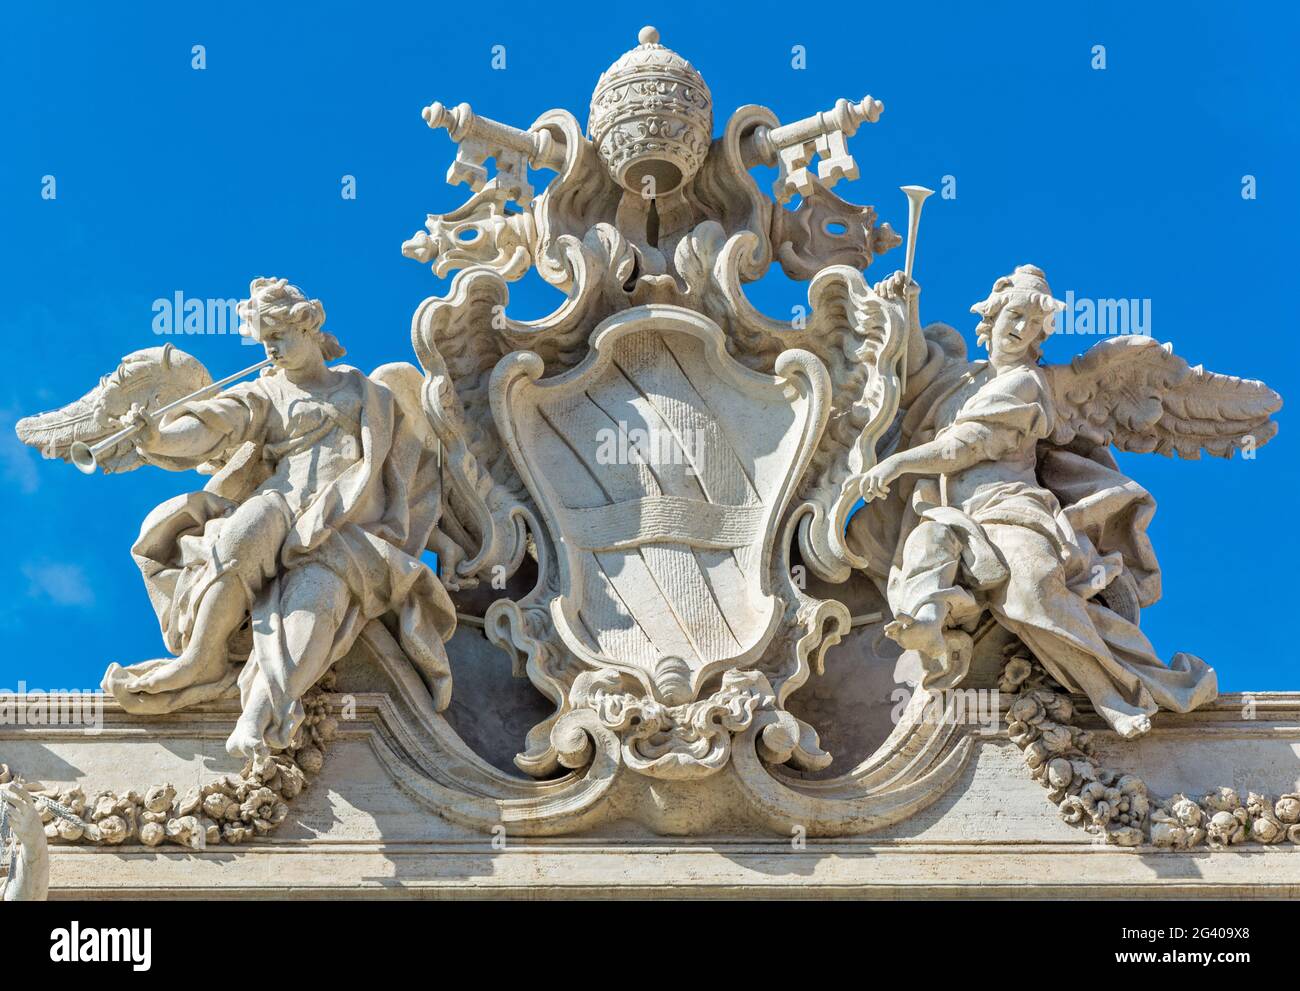 Das päpstliche Wappen von Clemens XII. Krönt die Fassade des Trevi-Brunnens in Rom Stockfoto